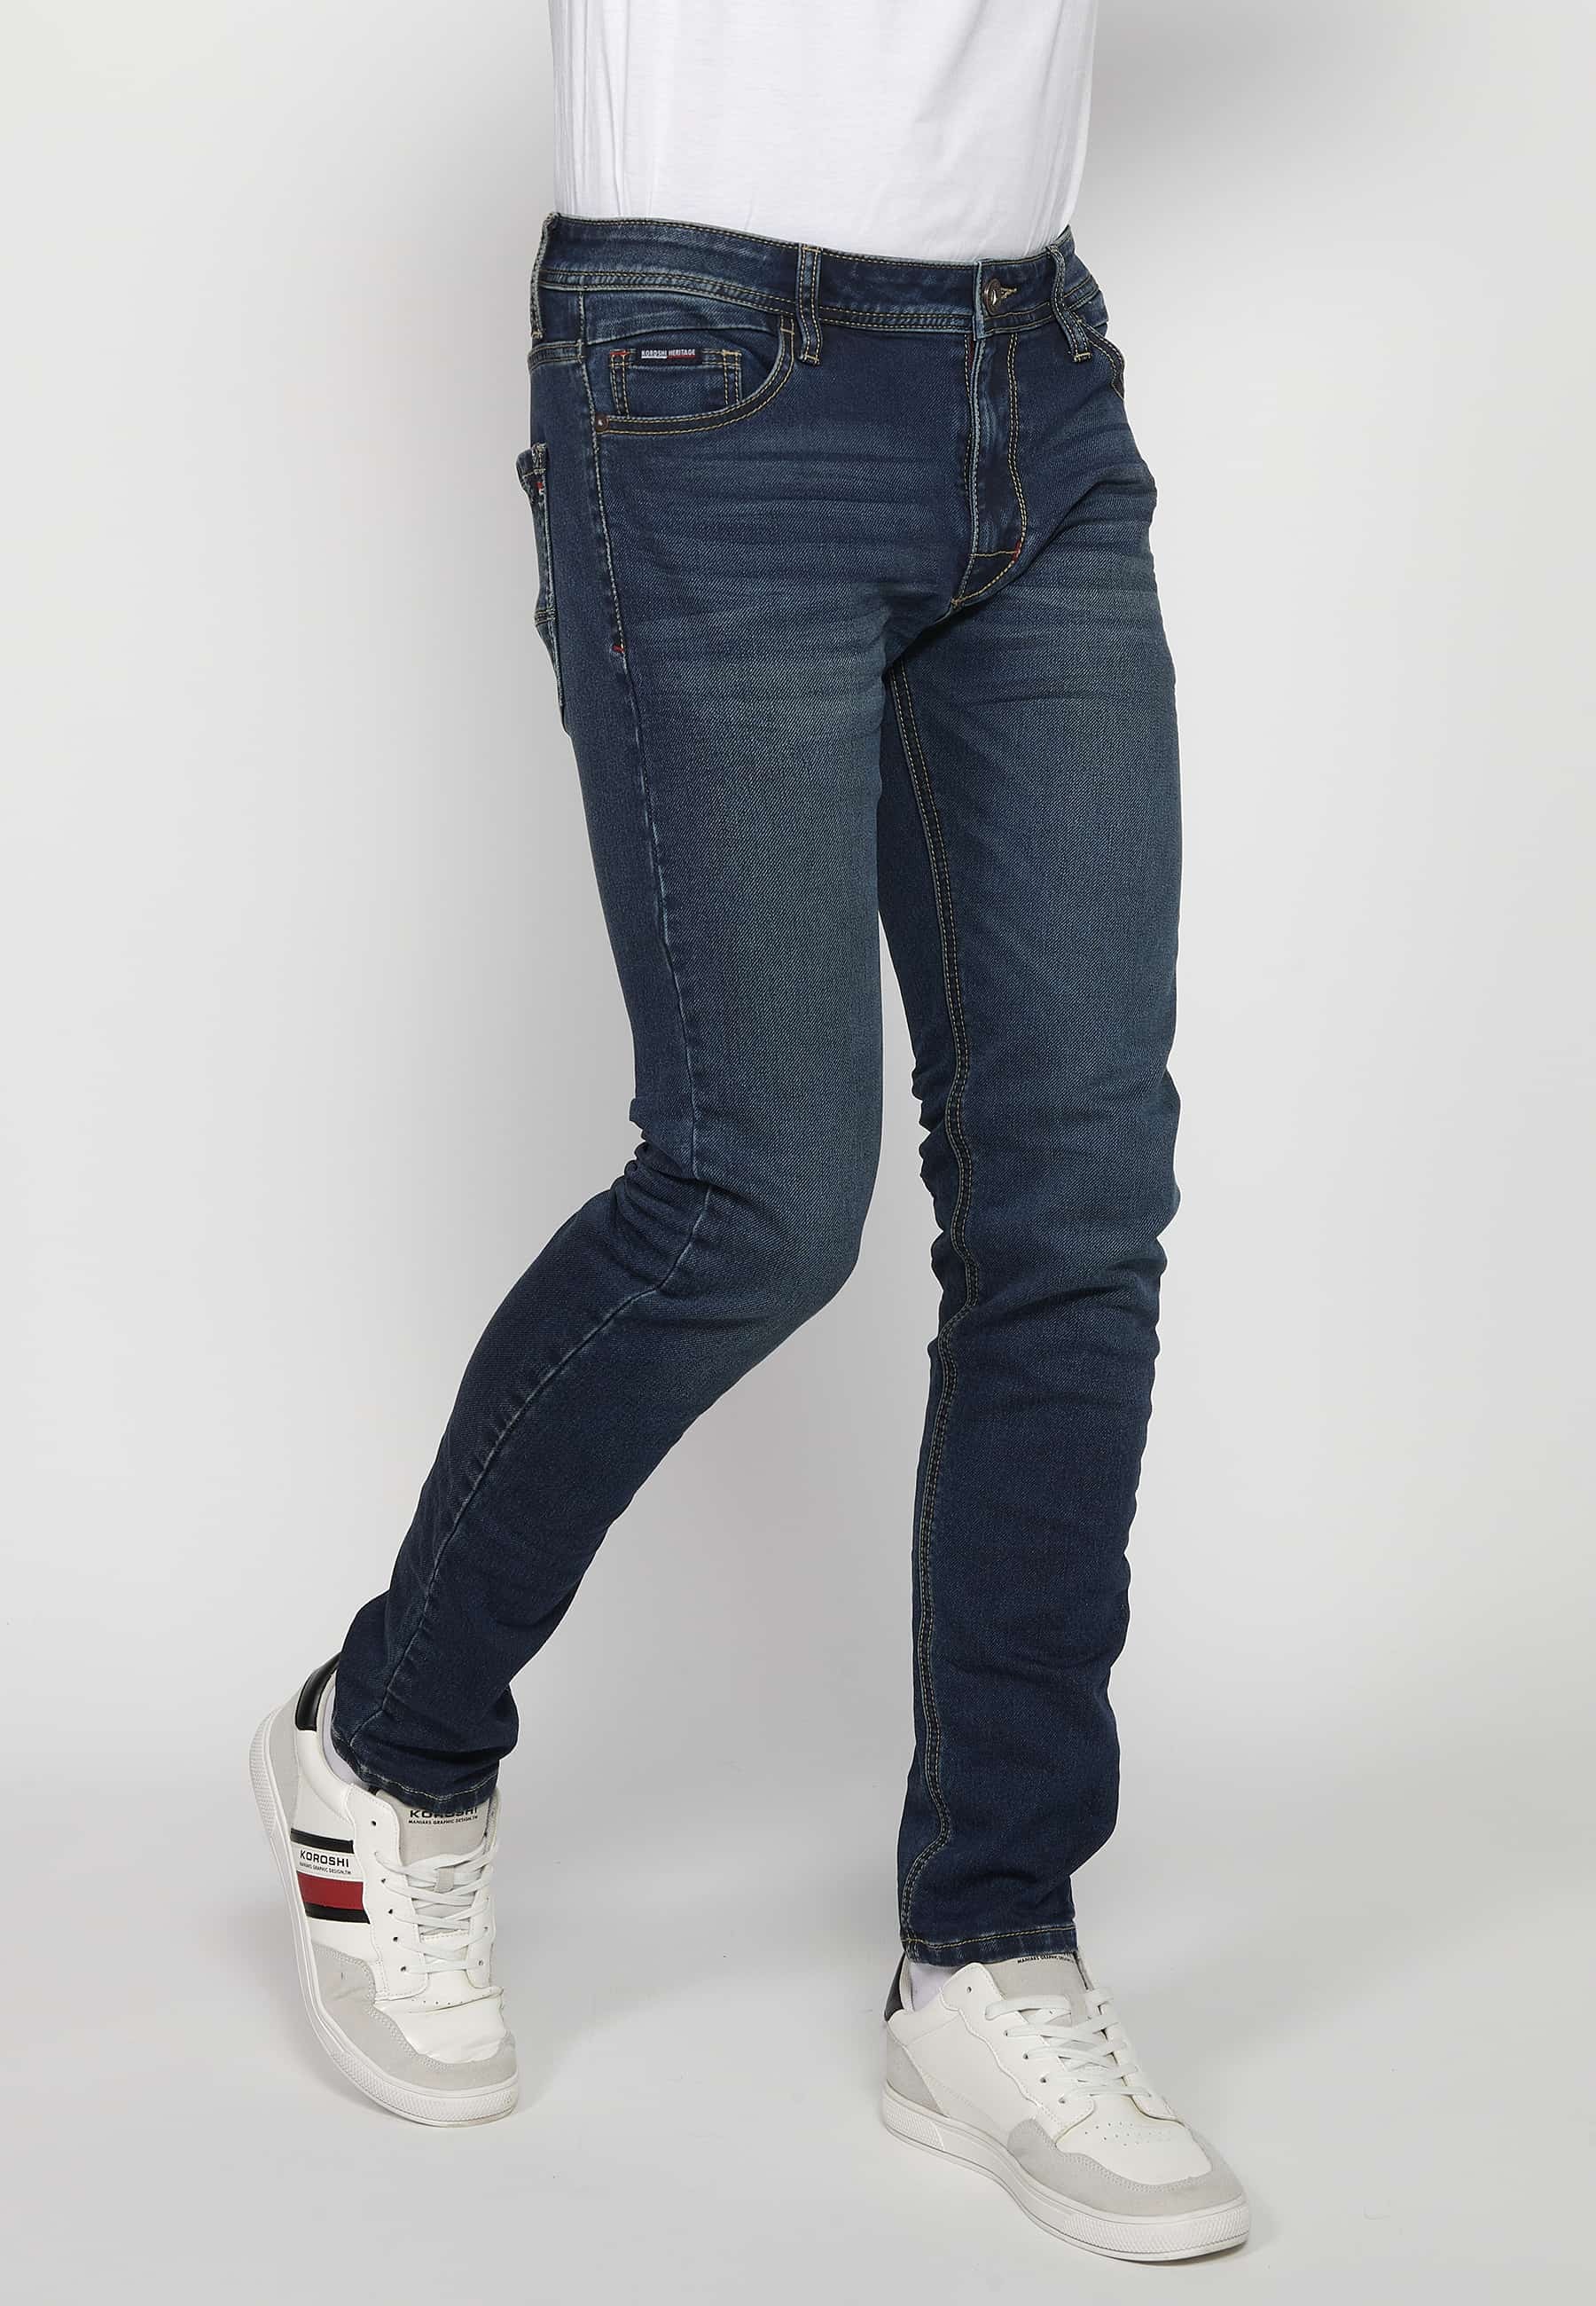 Pantalons llargs Jeans slim fit amb Tancament davanter amb cremallera i botó amb Cinc butxaques, un ceriller de Color Blau per a Home 3